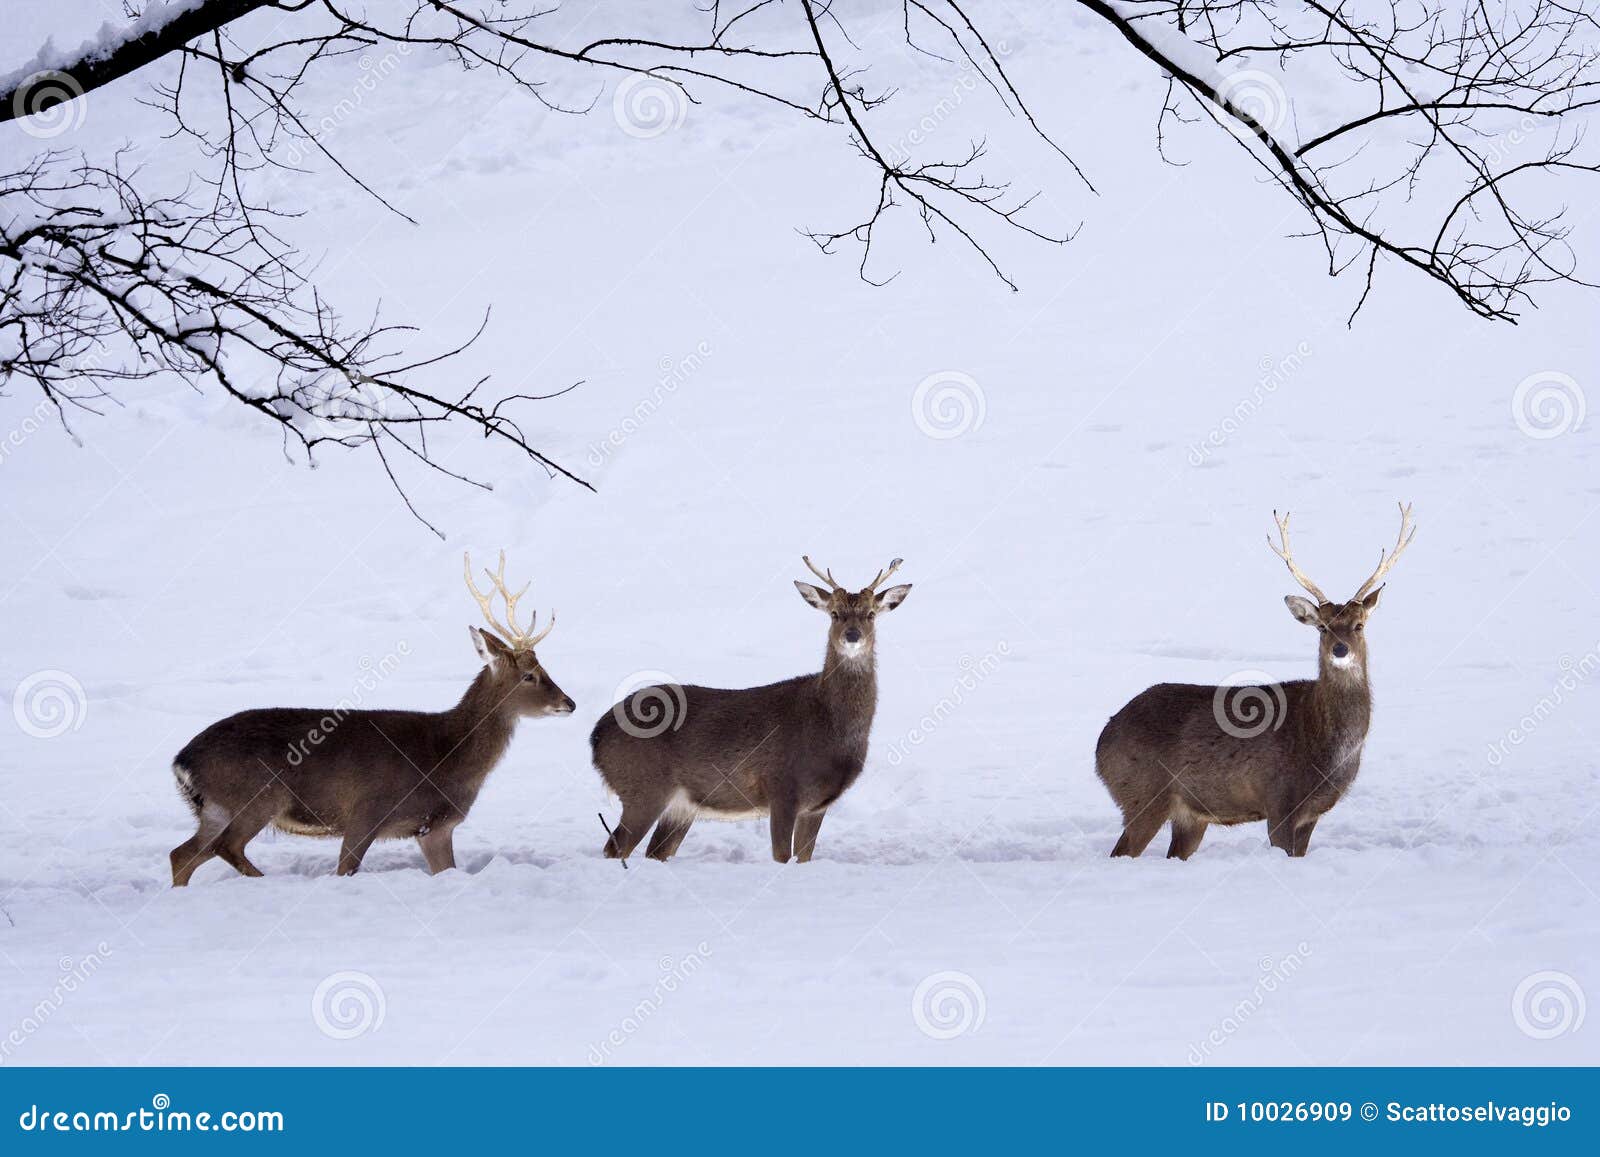 sika deers (cervus nippon) in the snow.